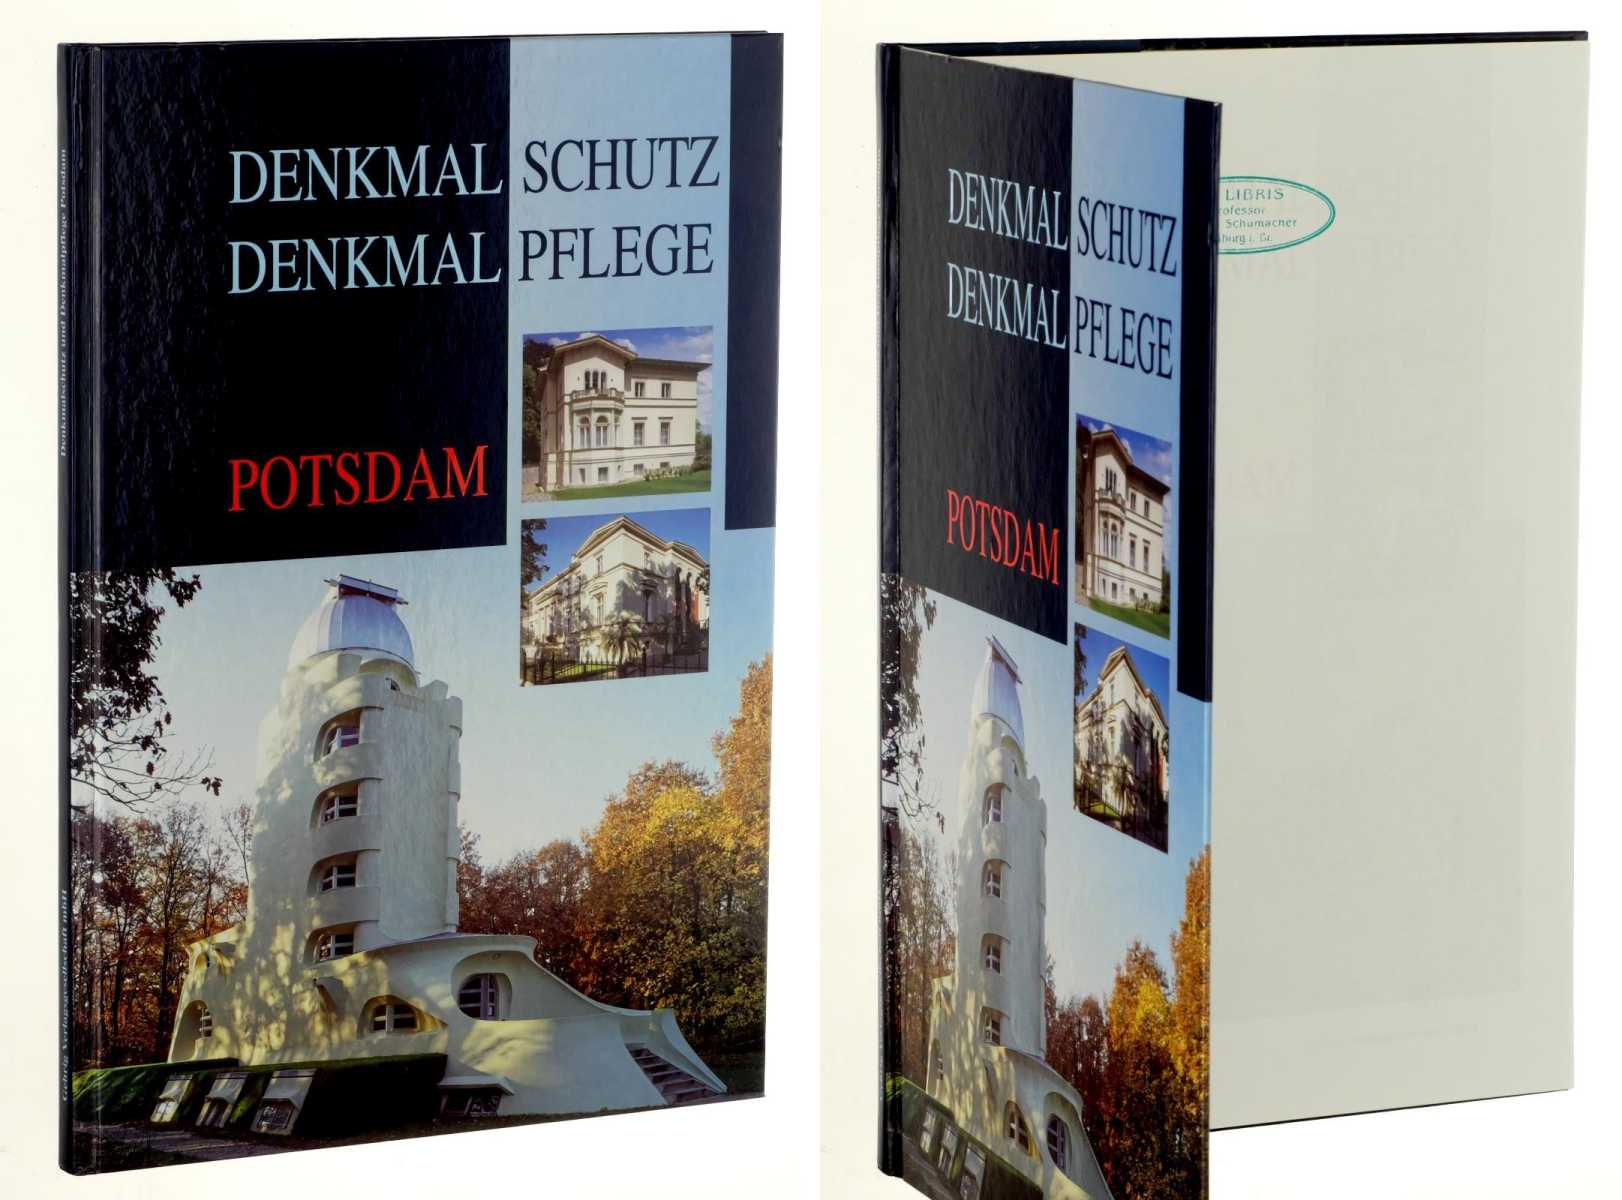 Stadtverwaltung Potsdam, Amt für Denkmalpflege (Hrsg.):  Denkmalschutz, Denkmalpflege Potsdam. 